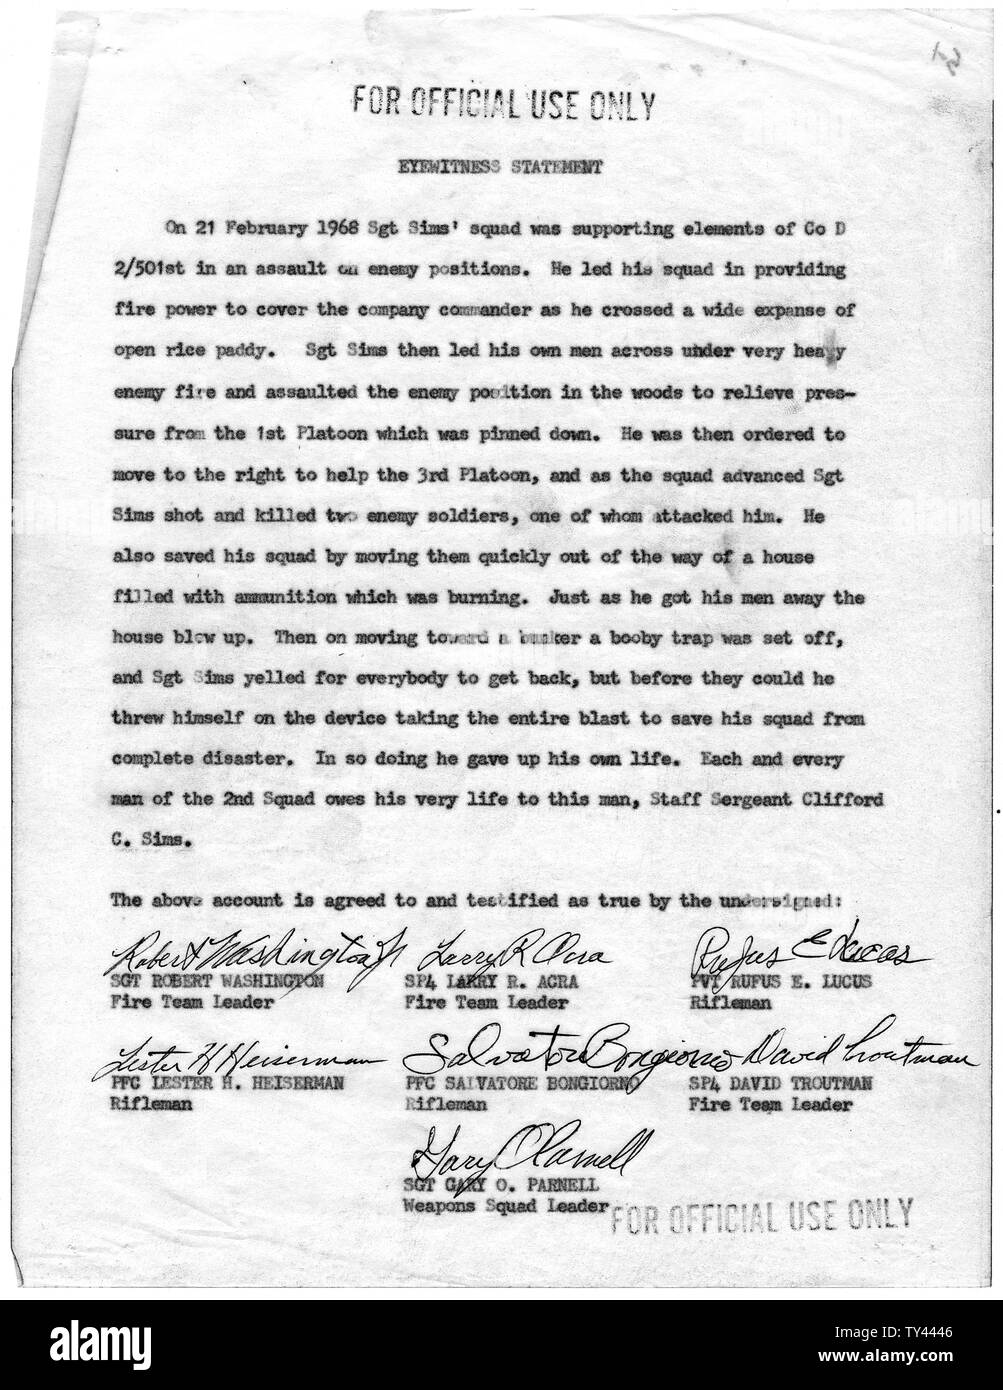 Declaración de testigos presenciales de Robert Washington, Lester H. Heiserman, Larry R. Acra, Salvatore Bongiorno, Gary O. Parnell, Rufus E. Lucus, y David Troutman, empresa D, segundo batallón de infantería aerotransportado), 501ª, 101ª División Aerotransportada sobre SGE Clifford C. Sims; alcance y contenido: Esta declaración contiene pruebas de testigos de las acciones de la SGE Clifford C. Sims, quien se distinguió en Febrero 21, 1968 en la batalla de Hue, República de Vietnam. Como resultado de ésta y otras declaraciones, el Sargento Sims fue otorgado póstumamente la Medalla de Honor del Congreso. En un extraordinario Foto de stock